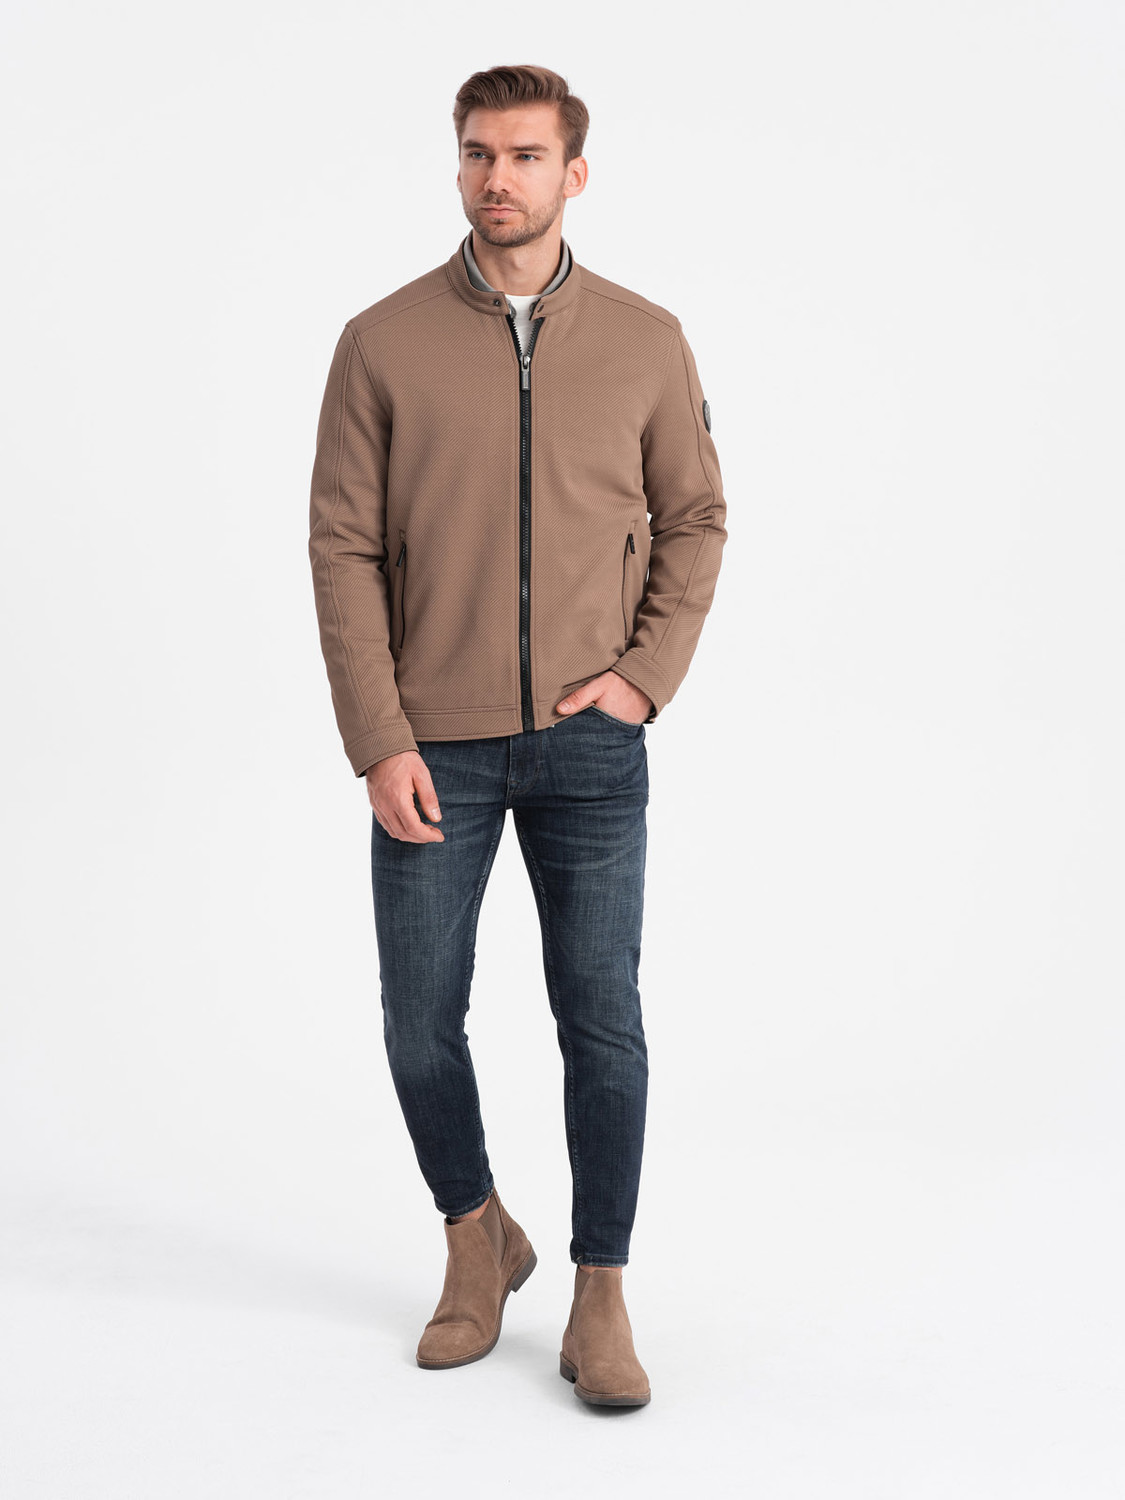 Men's BIKER jacket in structured fabric - light brown V4 OM-JANP V4 OM-JANP - 0138